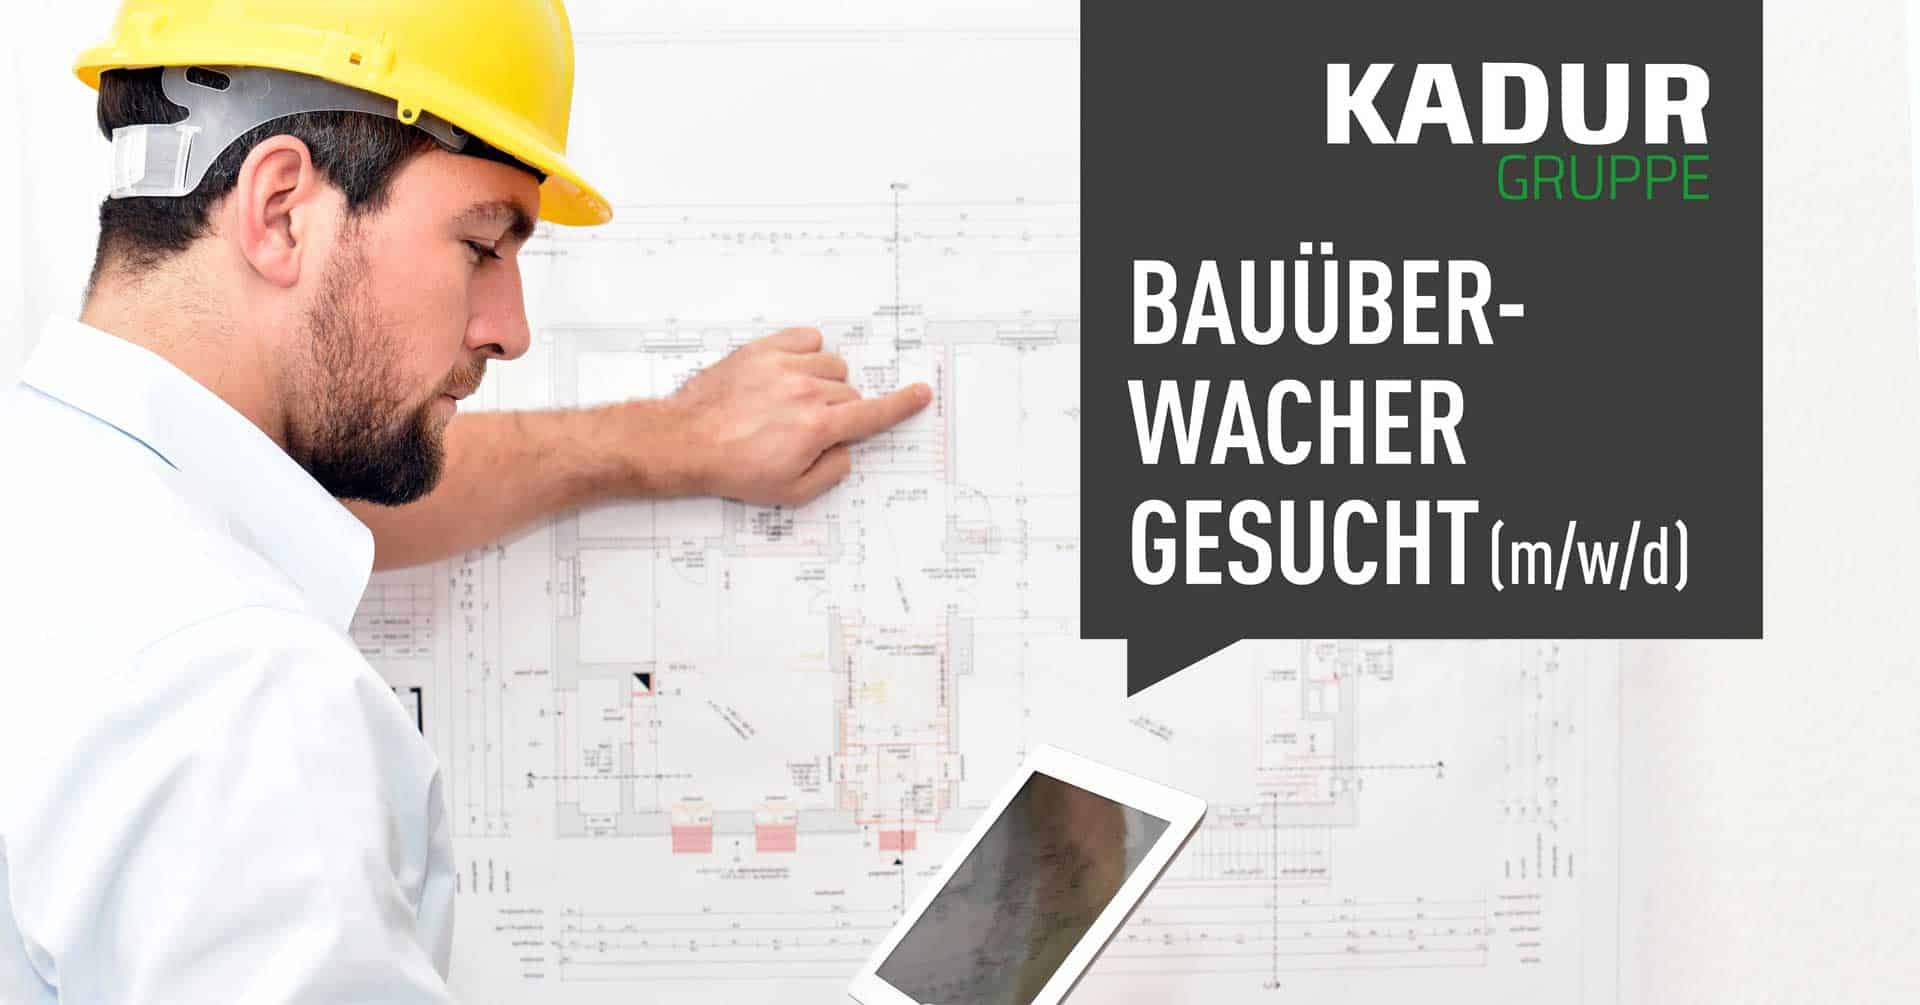 Job KADUR Gruppe Bauüberwacher (m/w/d) gesucht